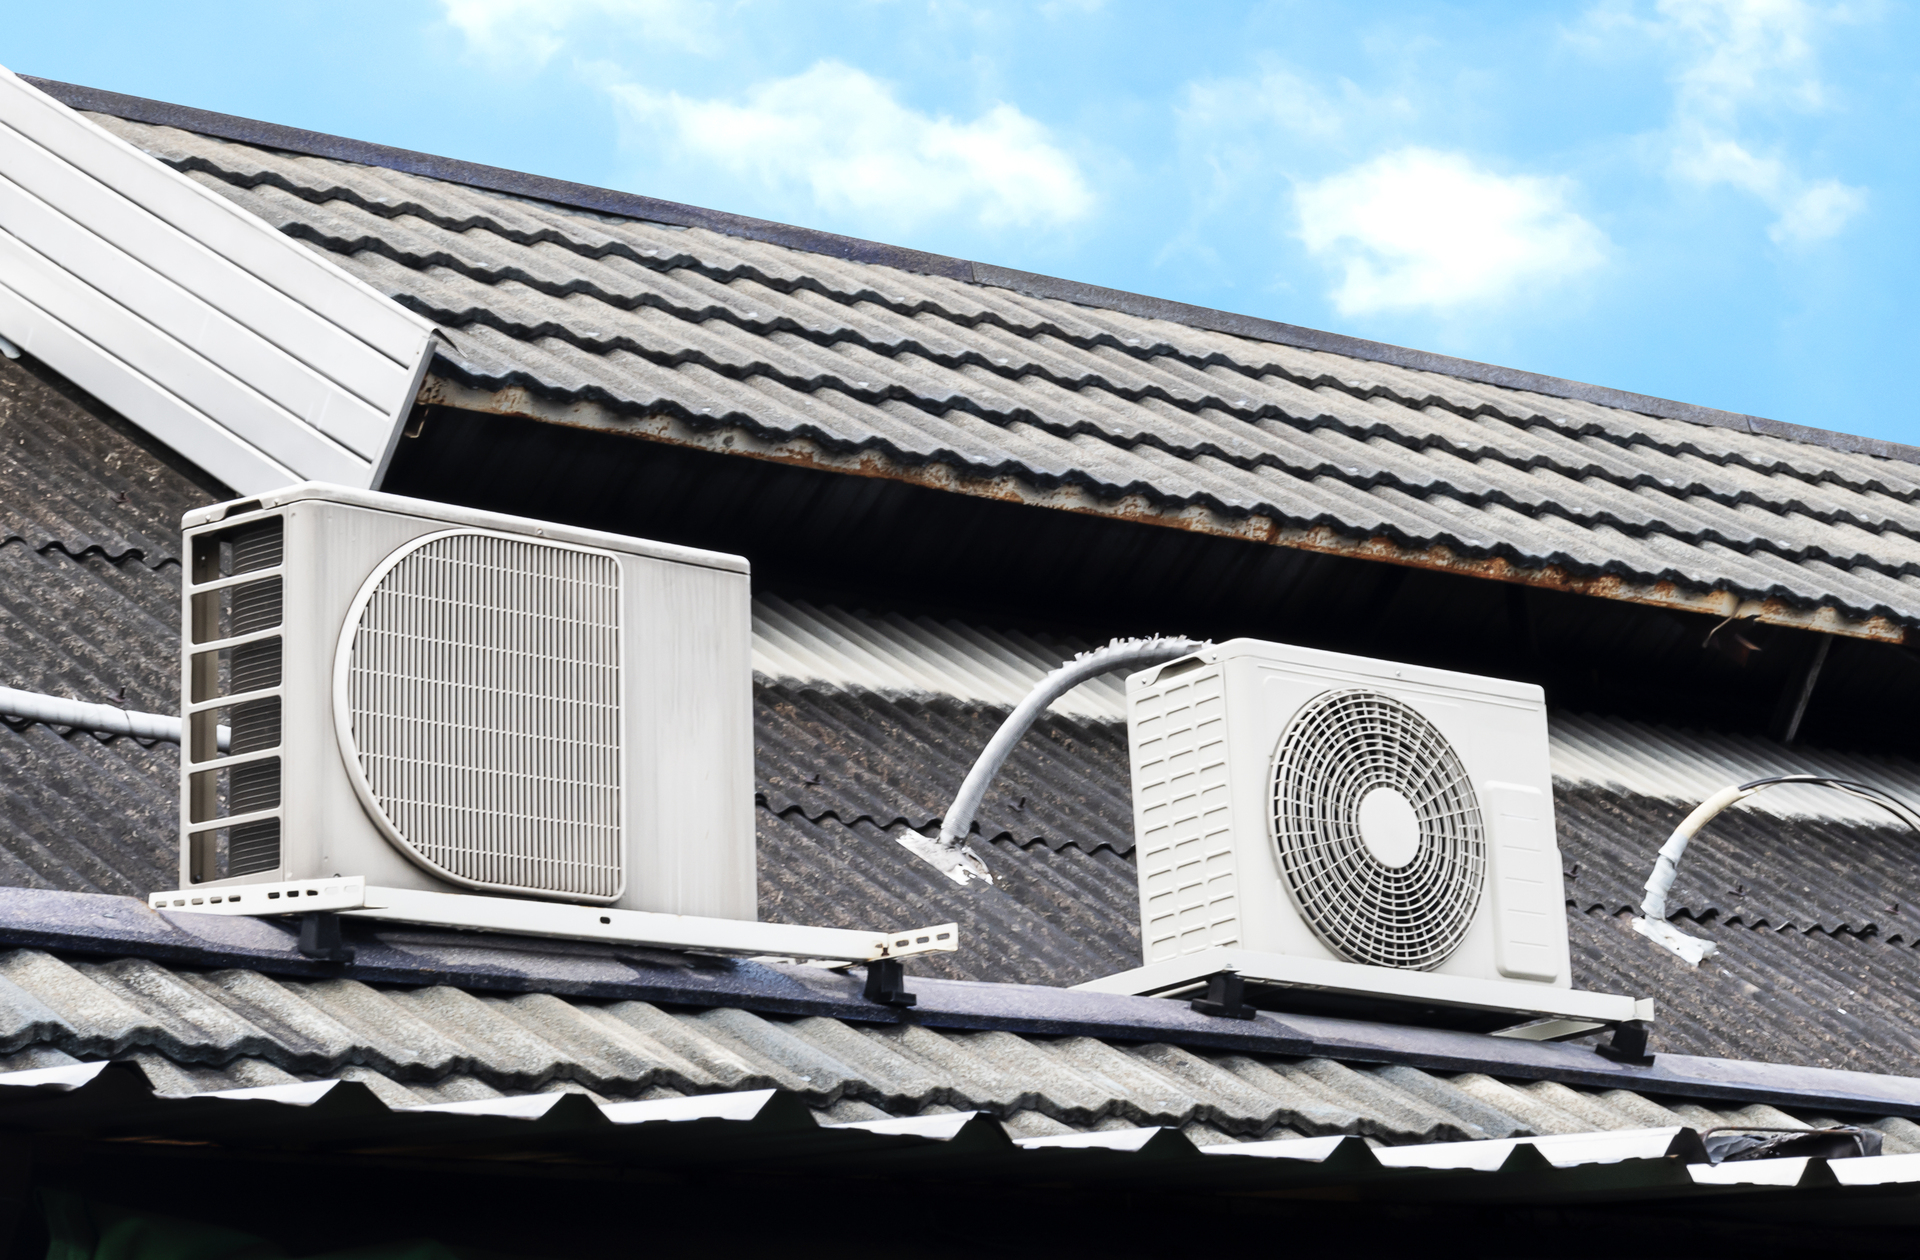 Na obrazku możemy zobaczyć białe klimatyzatory typu multi split zamontowane na dachu domu. Urządzenia te służą do klimatyzacji pomieszczeń wewnątrz budynku. Montaż na dachu pozwala na wykorzystanie miejsca na zewnątrz, co jest szczególnie ważne w przypadku mniejszych działek. Dzięki temu rozwiązaniu, klimatyzatory nie zajmują cennego miejsca wewnątrz domu i pozwalają na skuteczną regulację temperatury w każdym pomieszczeniu.